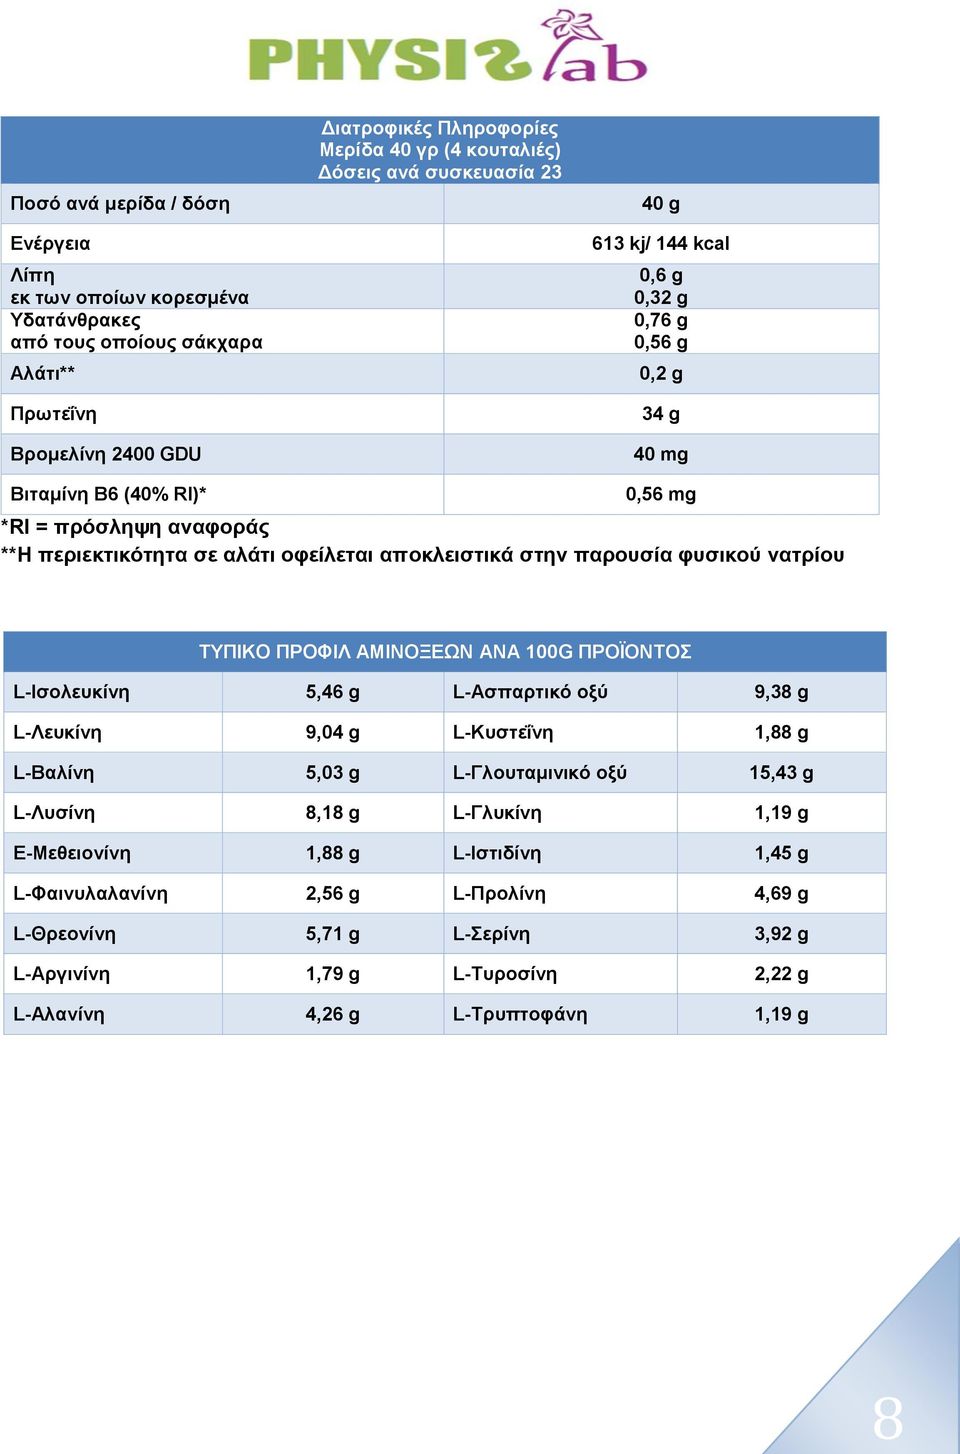 φυσικού νατρίου ΤΥΠΙΚΟ ΠΡΟΦΙΛ ΑΜΙΝΟΞΕΩΝ ΑΝΑ 100G ΠΡΟΪΟΝΤΟΣ L-Ισολευκίνη 5,46 g L-Ασπαρτικό οξύ 9,38 g L-Λευκίνη 9,04 g L-Κυστεΐνη 1,88 g L-Βαλίνη 5,03 g L-Γλουταμινικό οξύ 15,43 g L-Λυσίνη 8,18 g